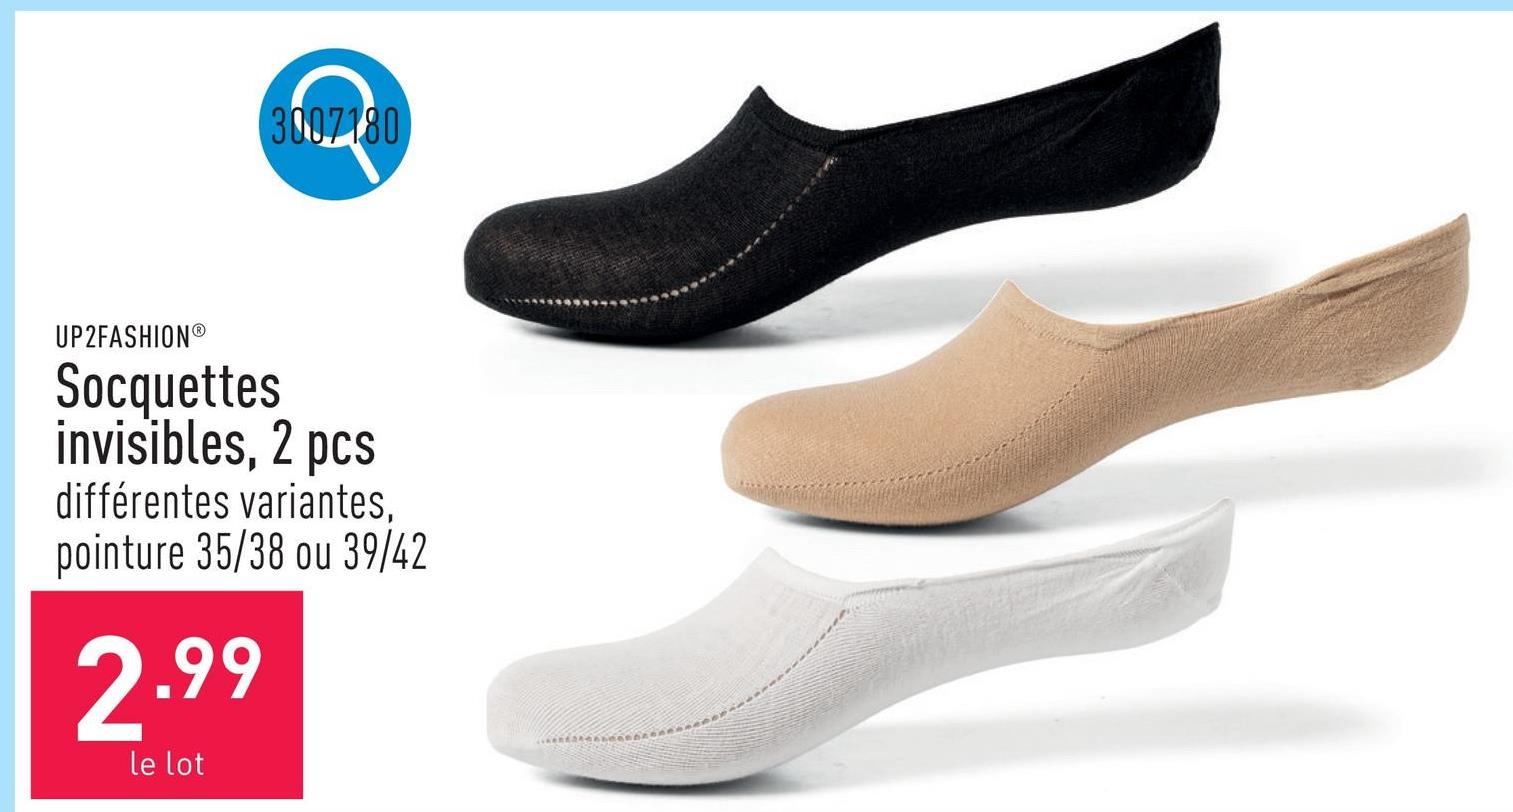 Socquettes invisibles, 2 pcs coton/polyamide, sans couture, choix entre différentes variantes, choix entre pointure 35/38 et 39/42, certifiées OEKO-TEX®